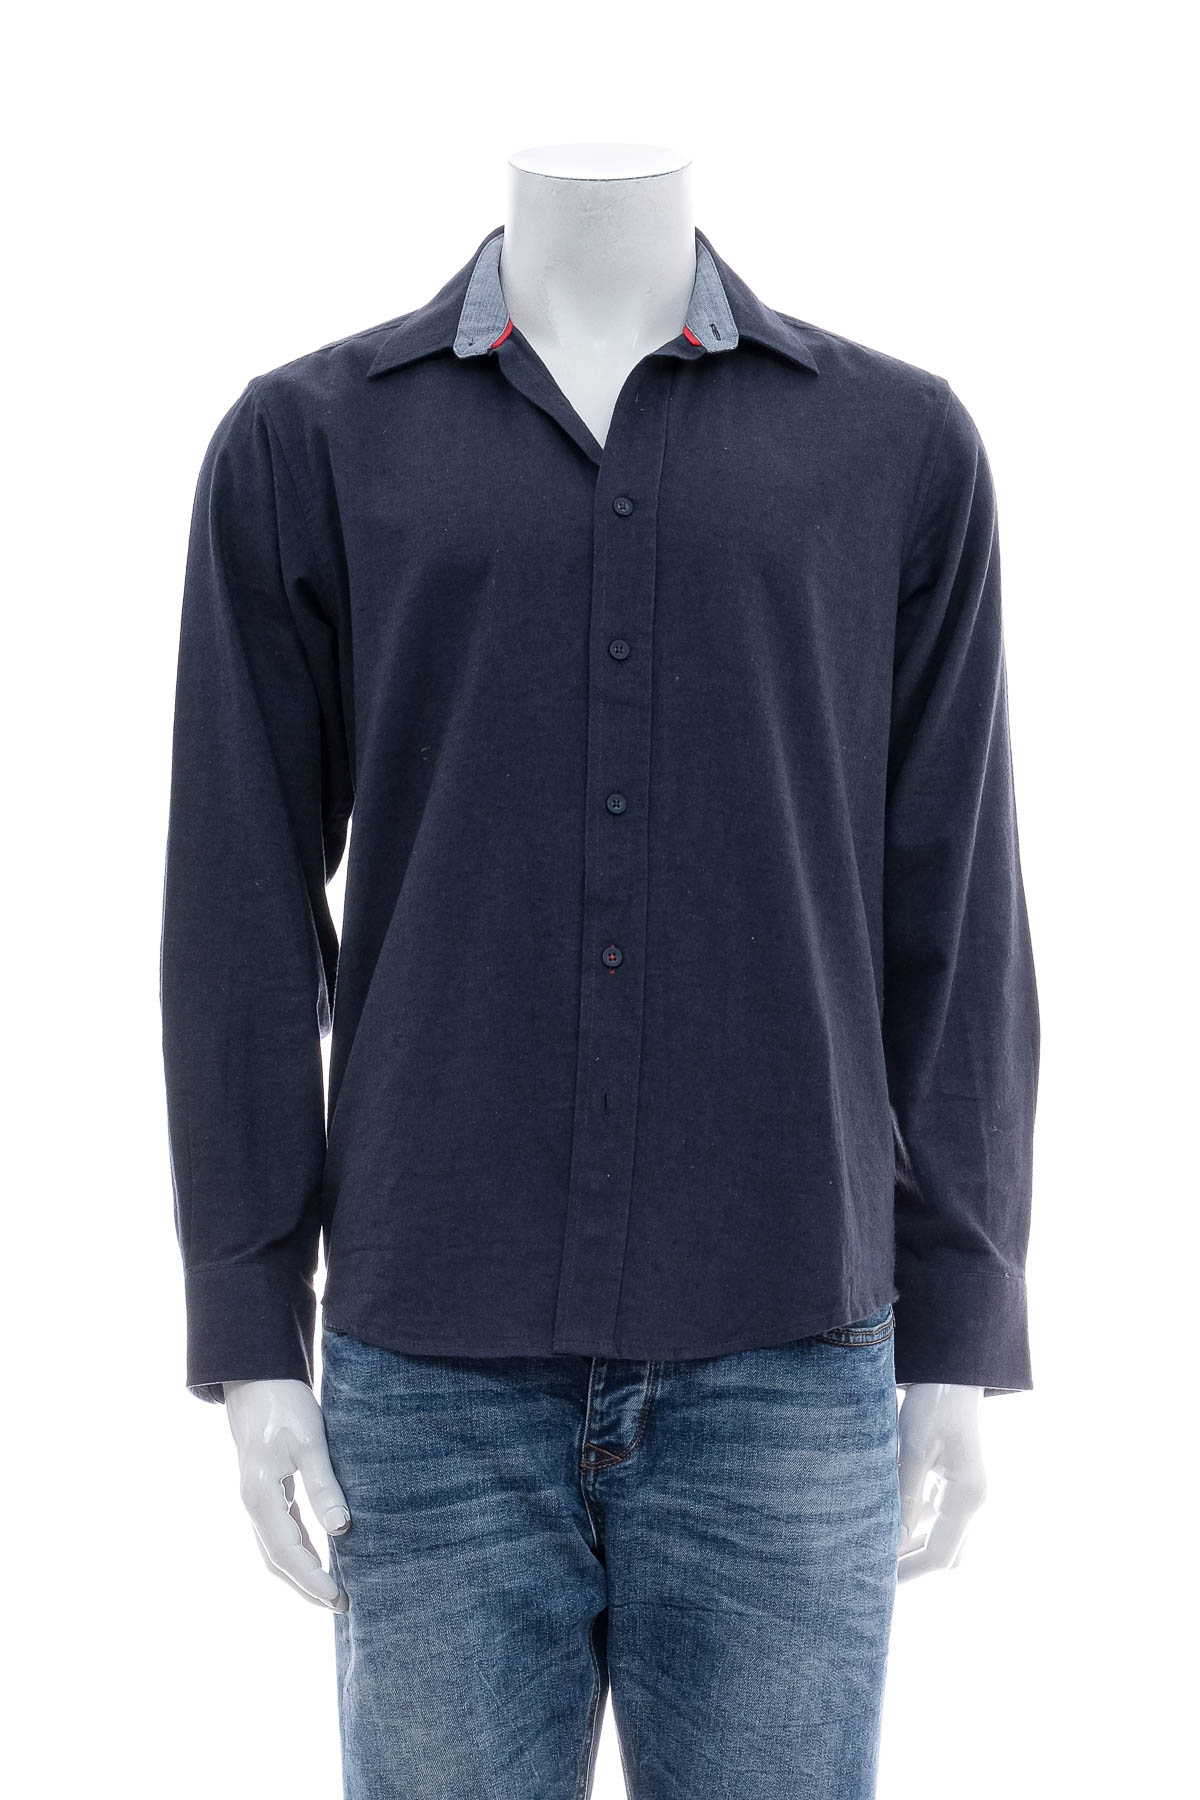 Ανδρικό πουκάμισο - Watsons - 0